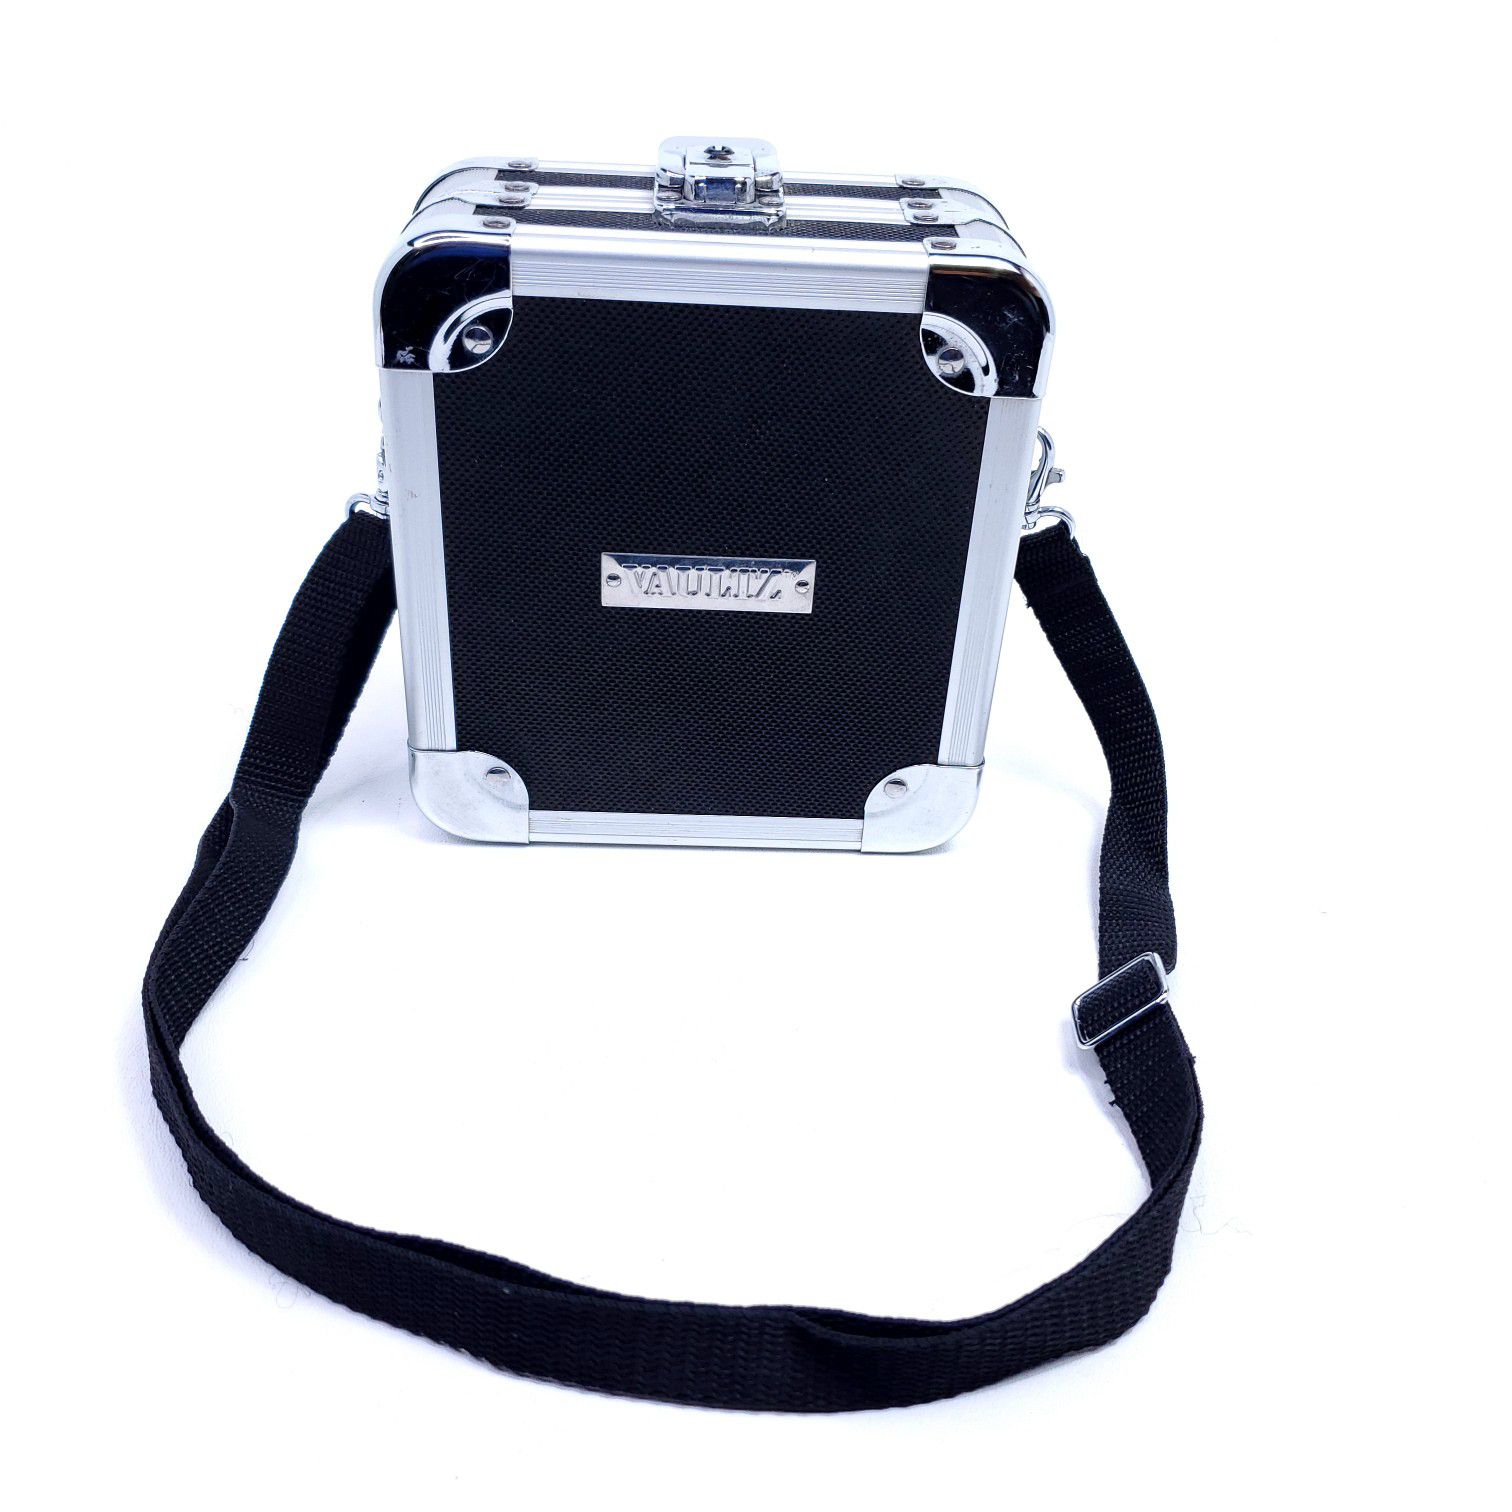 Vaultz CD Holder Hard Case, Portable, with shoulder strap. Pre owned, $15